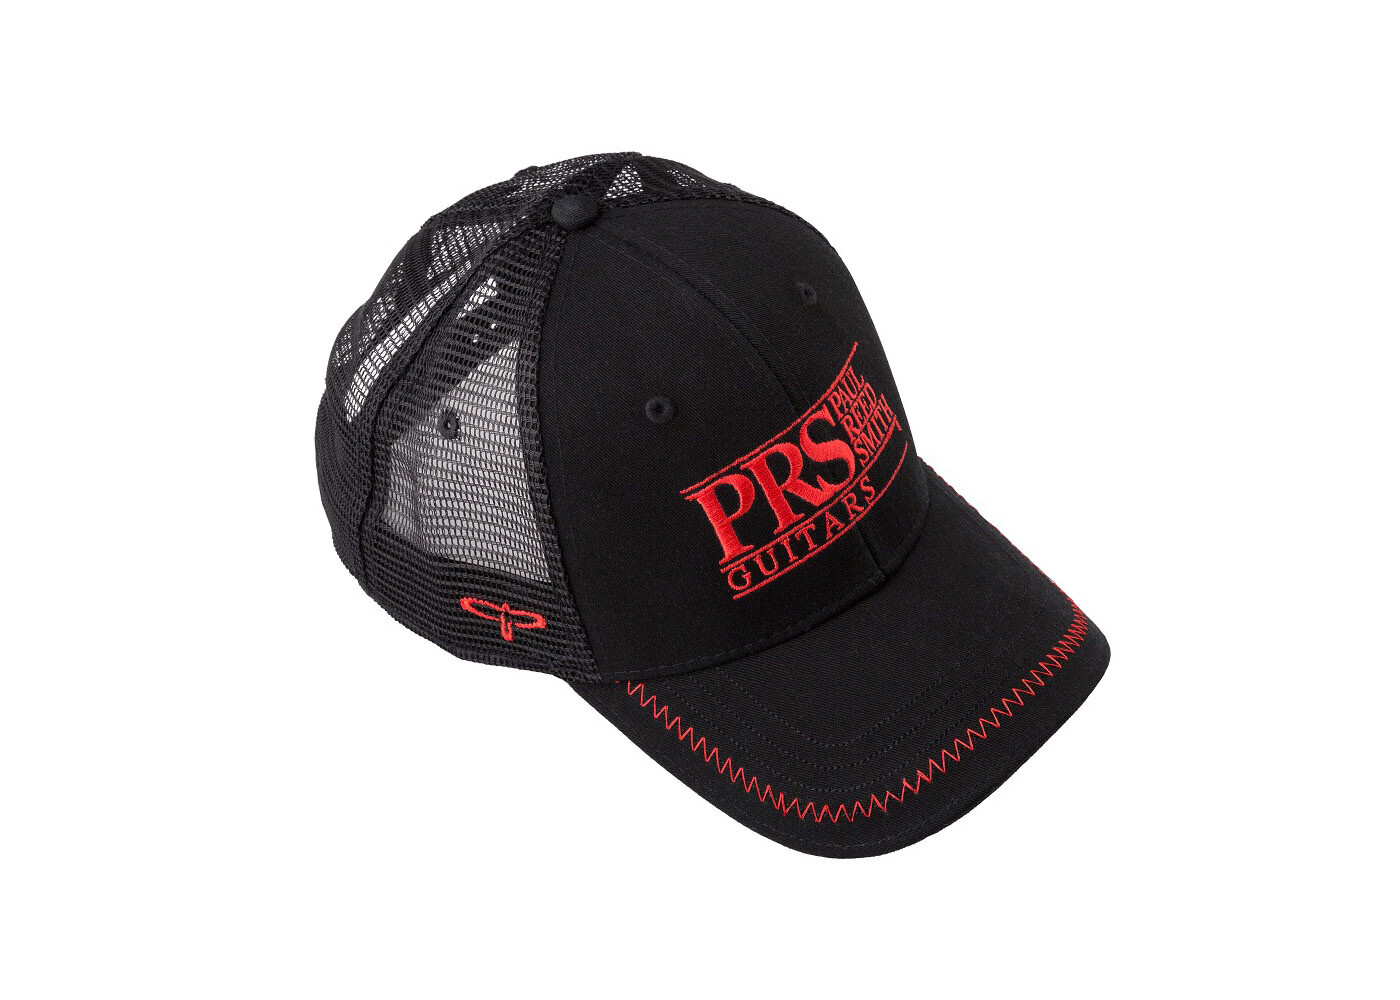 https://cdn.shoplightspeed.com/shops/648981/files/59483004/1400x1000x2/prs-guitars-prs-hat-trucker-prs-block-logo-red-bla.jpg